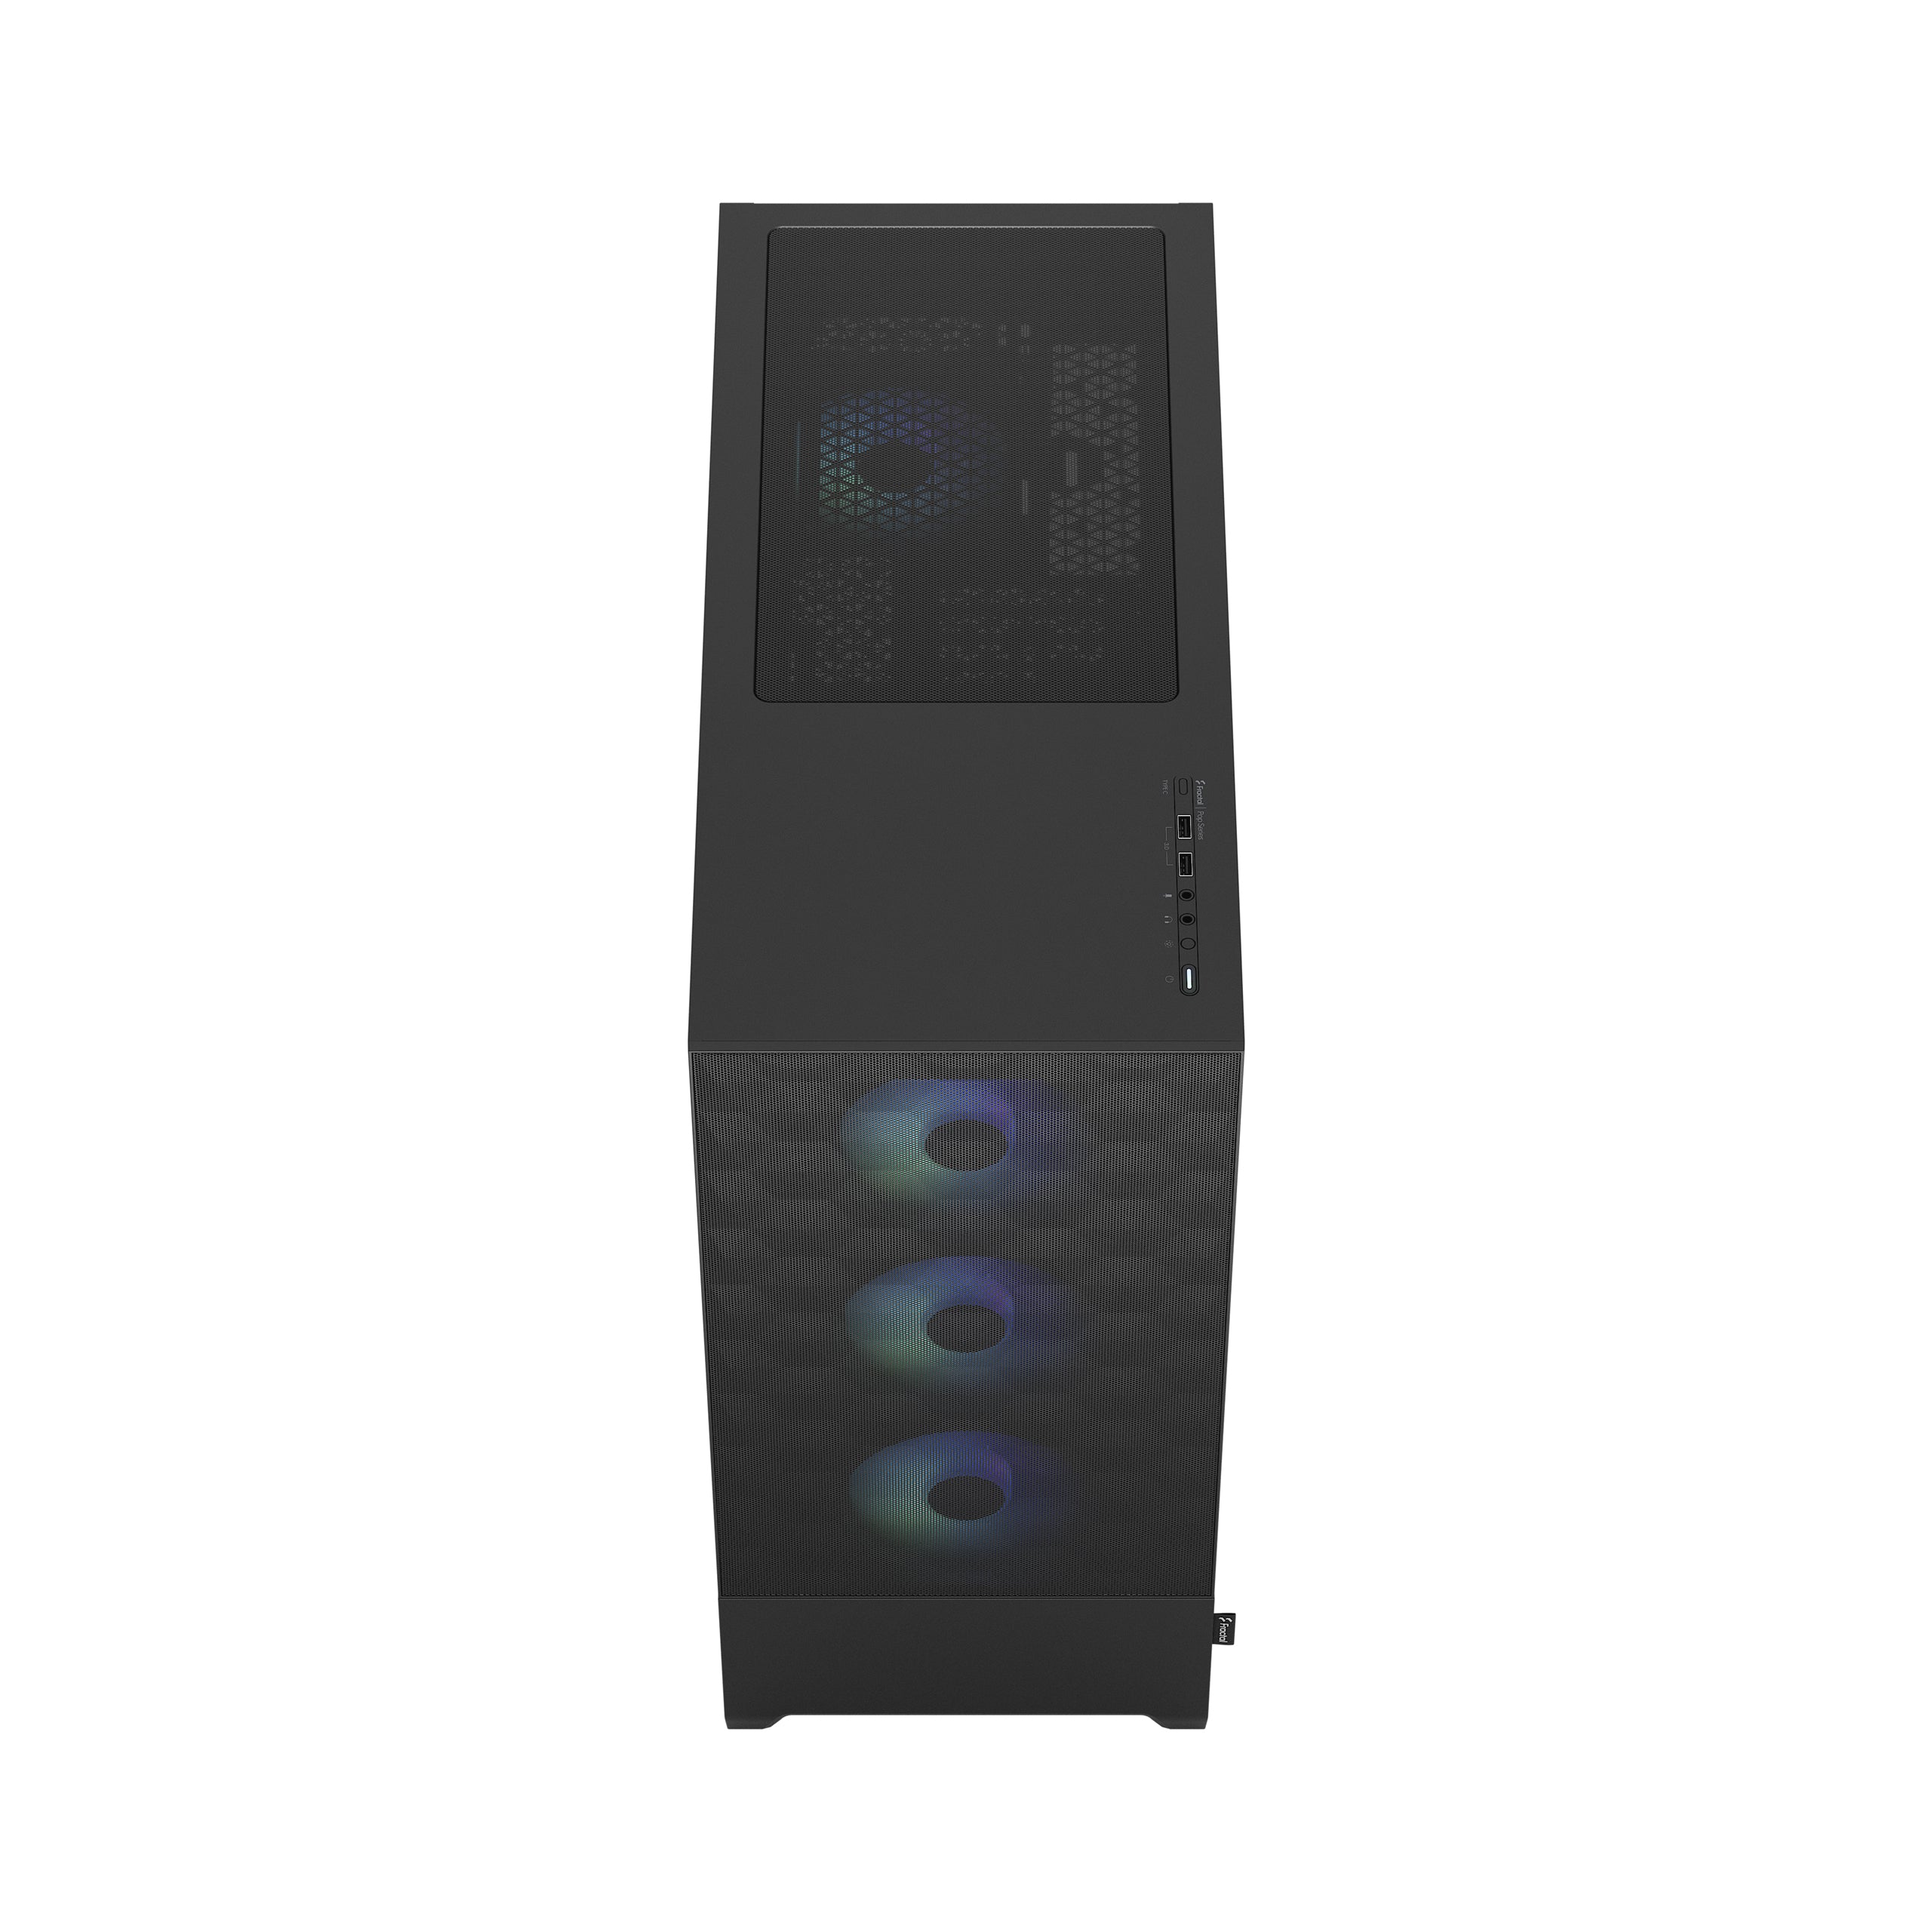 FRACTAL CASE TOWER POP XL AIR RGB BLACK TG CLEAR TINT